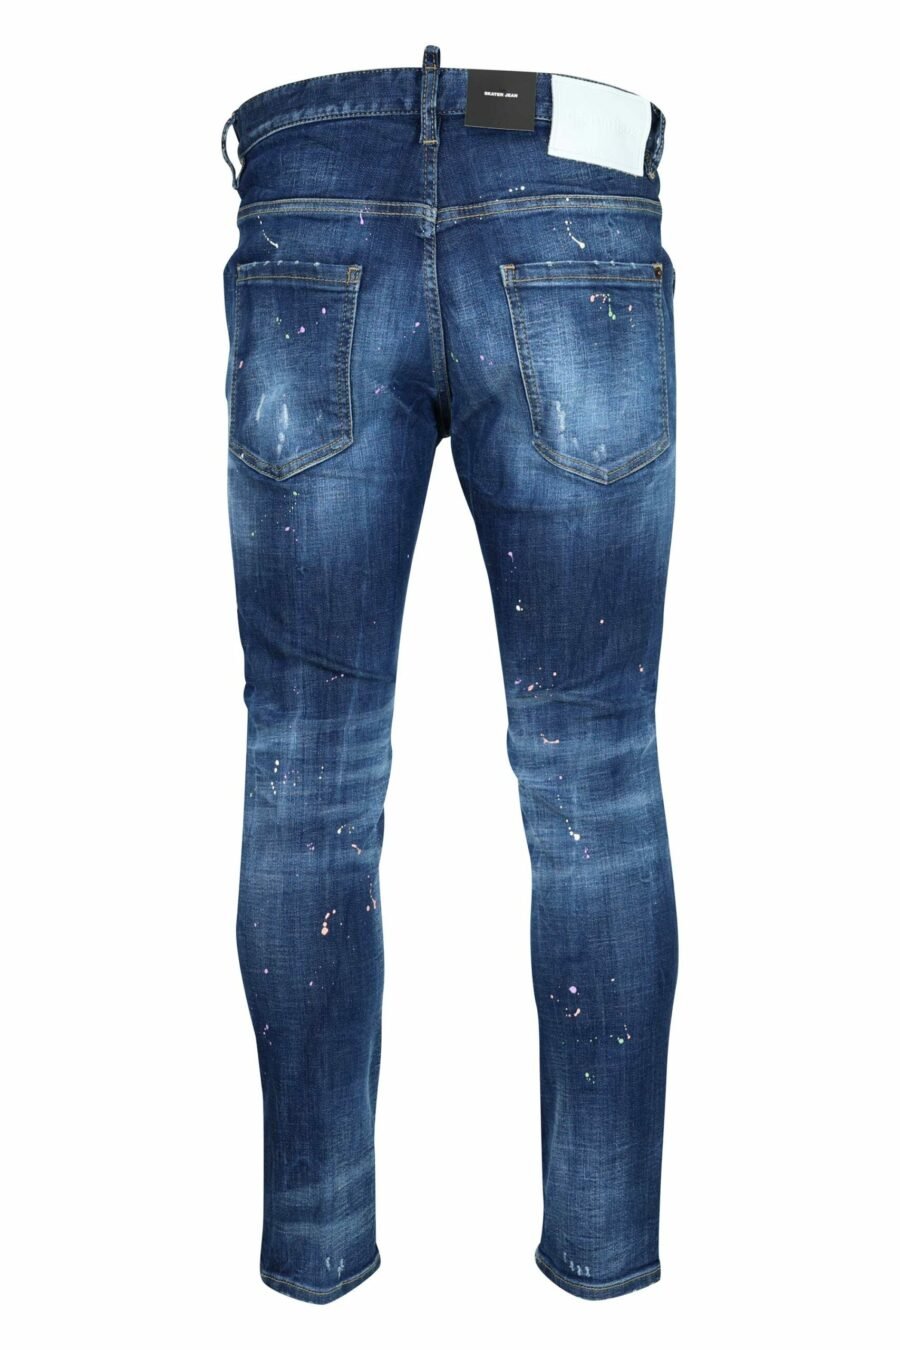 Pantalón vaquero azul oscuro "skater jean" con pintura blanca - 8054148527457 2 scaled